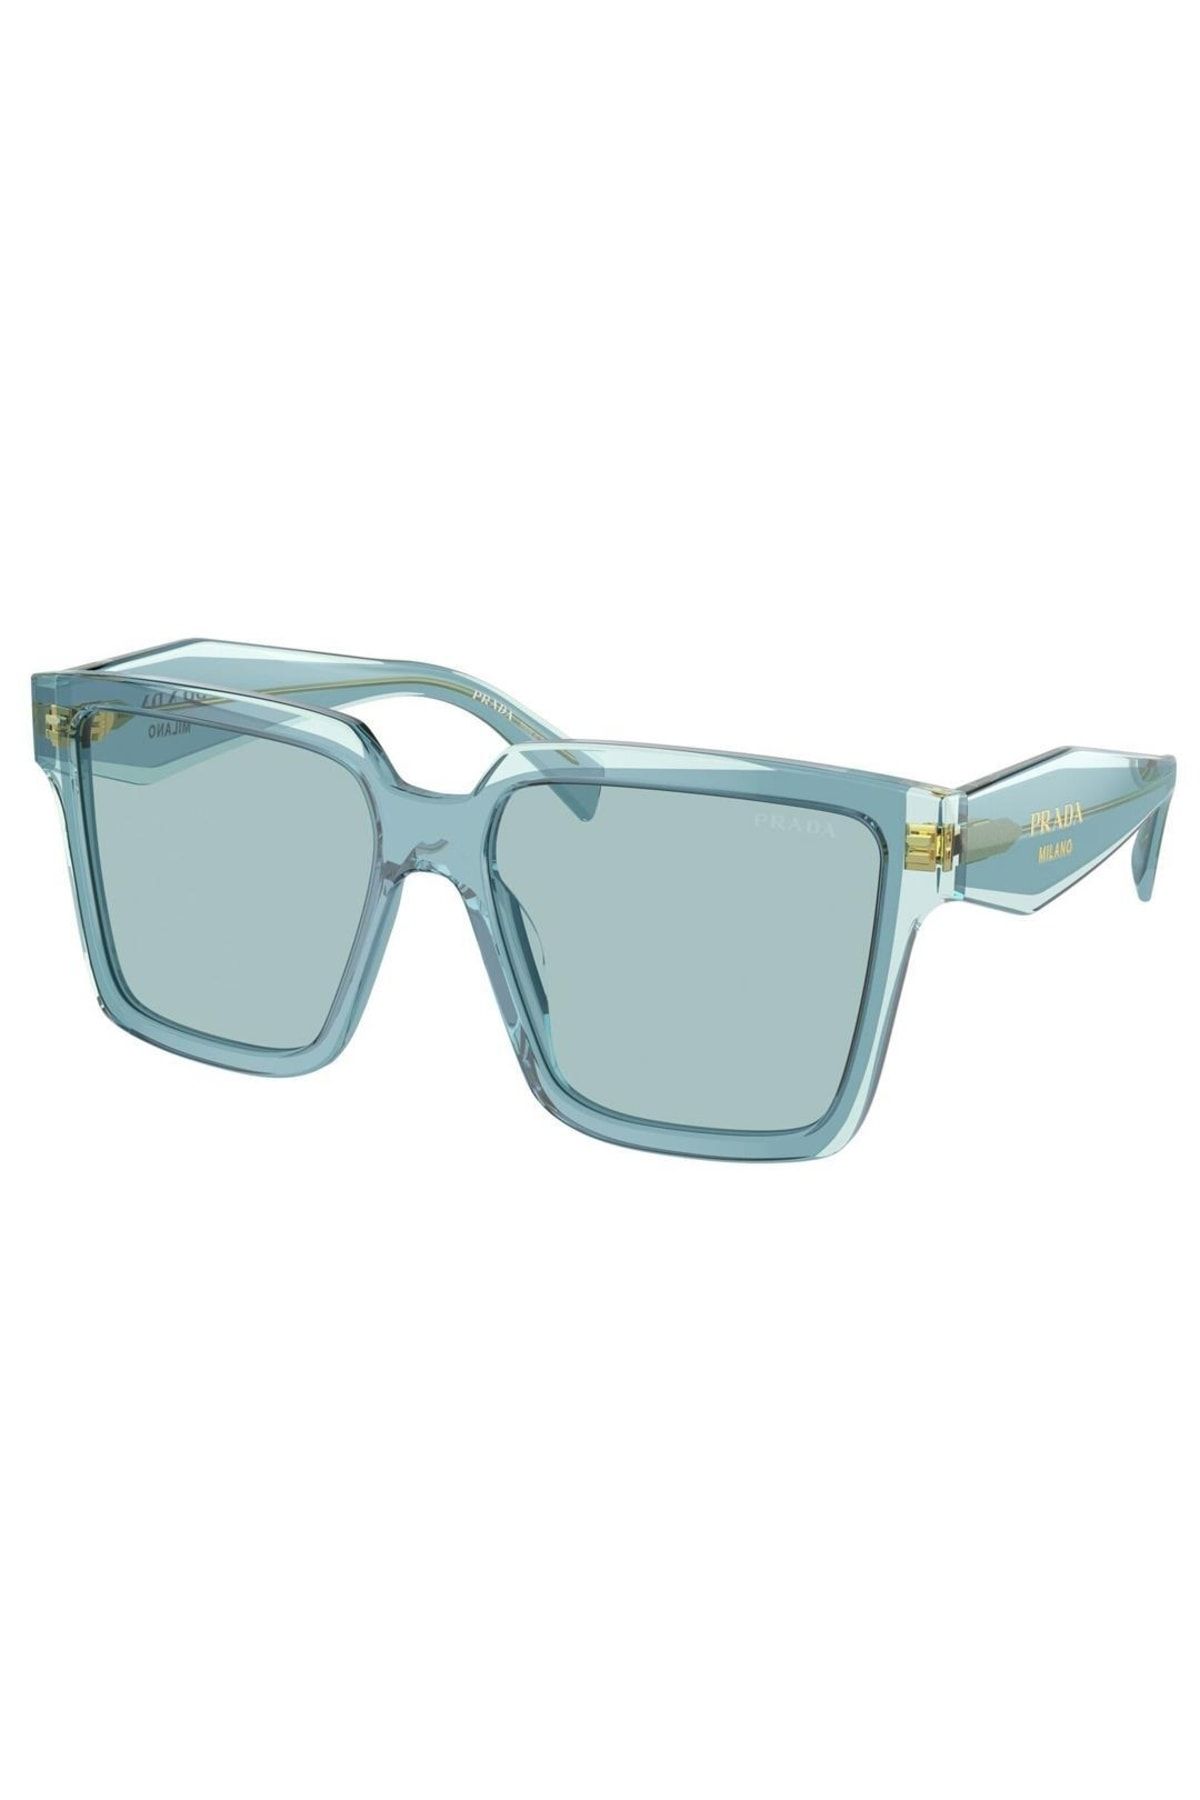 Prada blue tortoise shell | Prada glasses, Eyeglasses, Gold signet ring